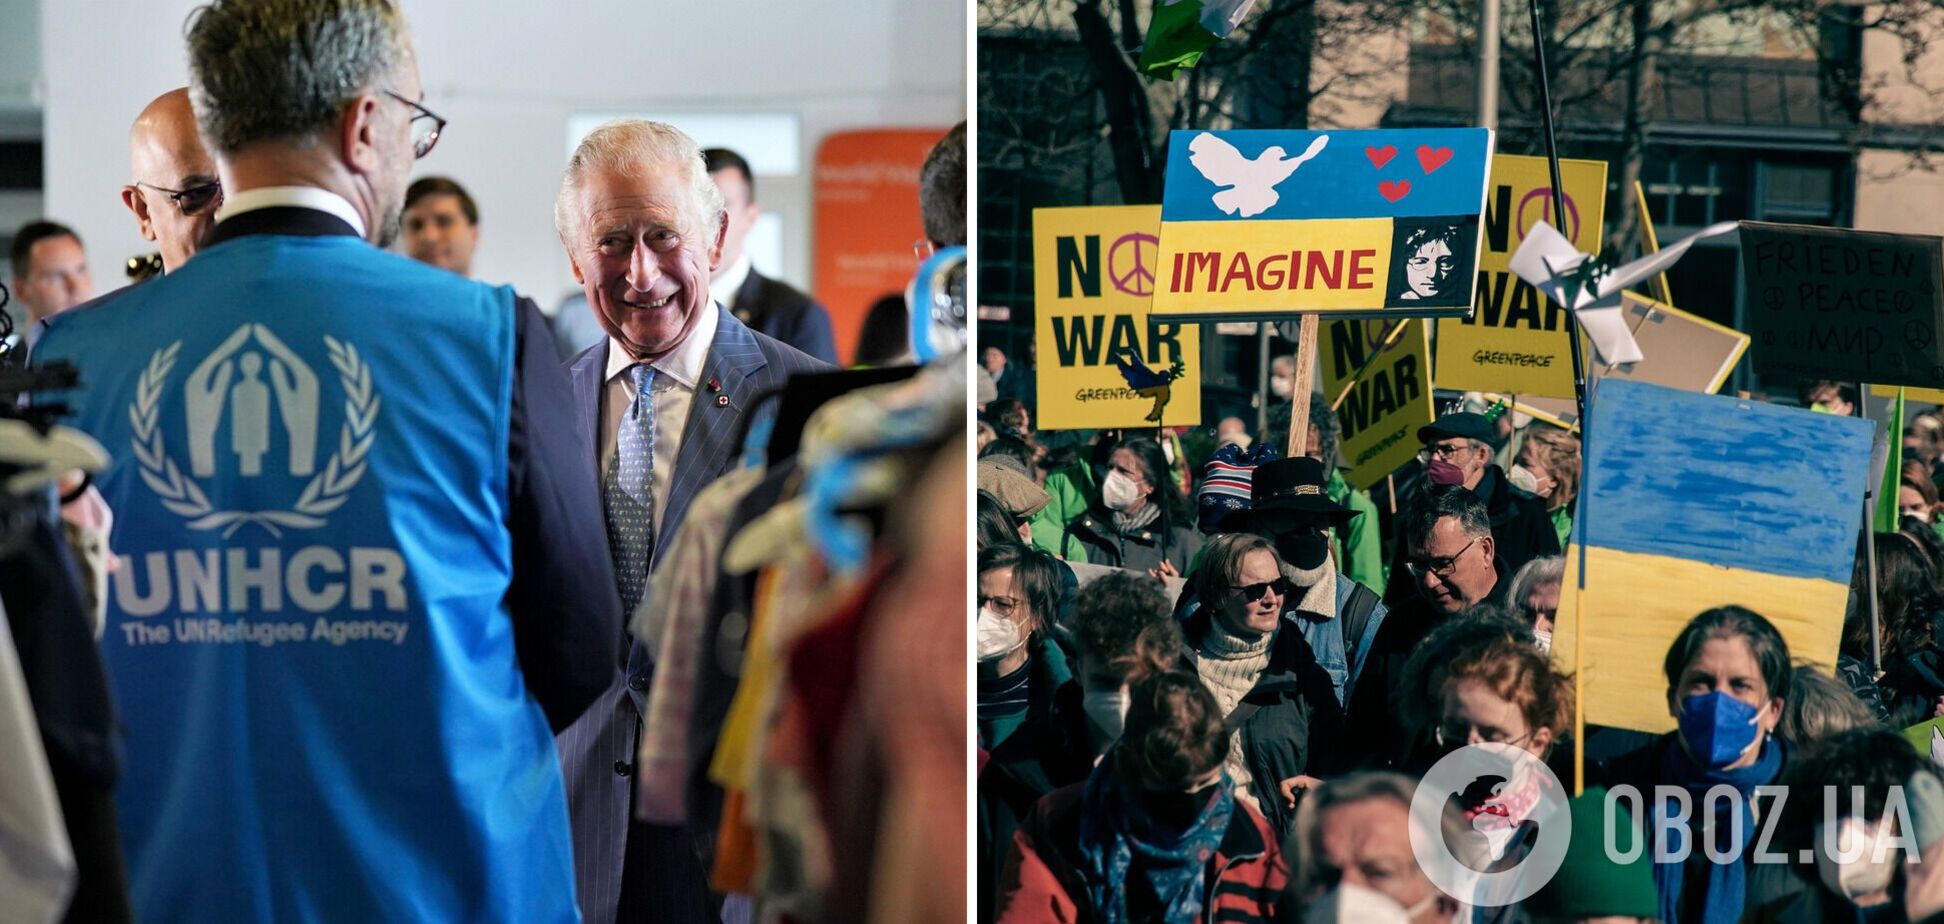 Принц Чарльз прилетел в Румынию, чтобы поддержать украинских беженцев